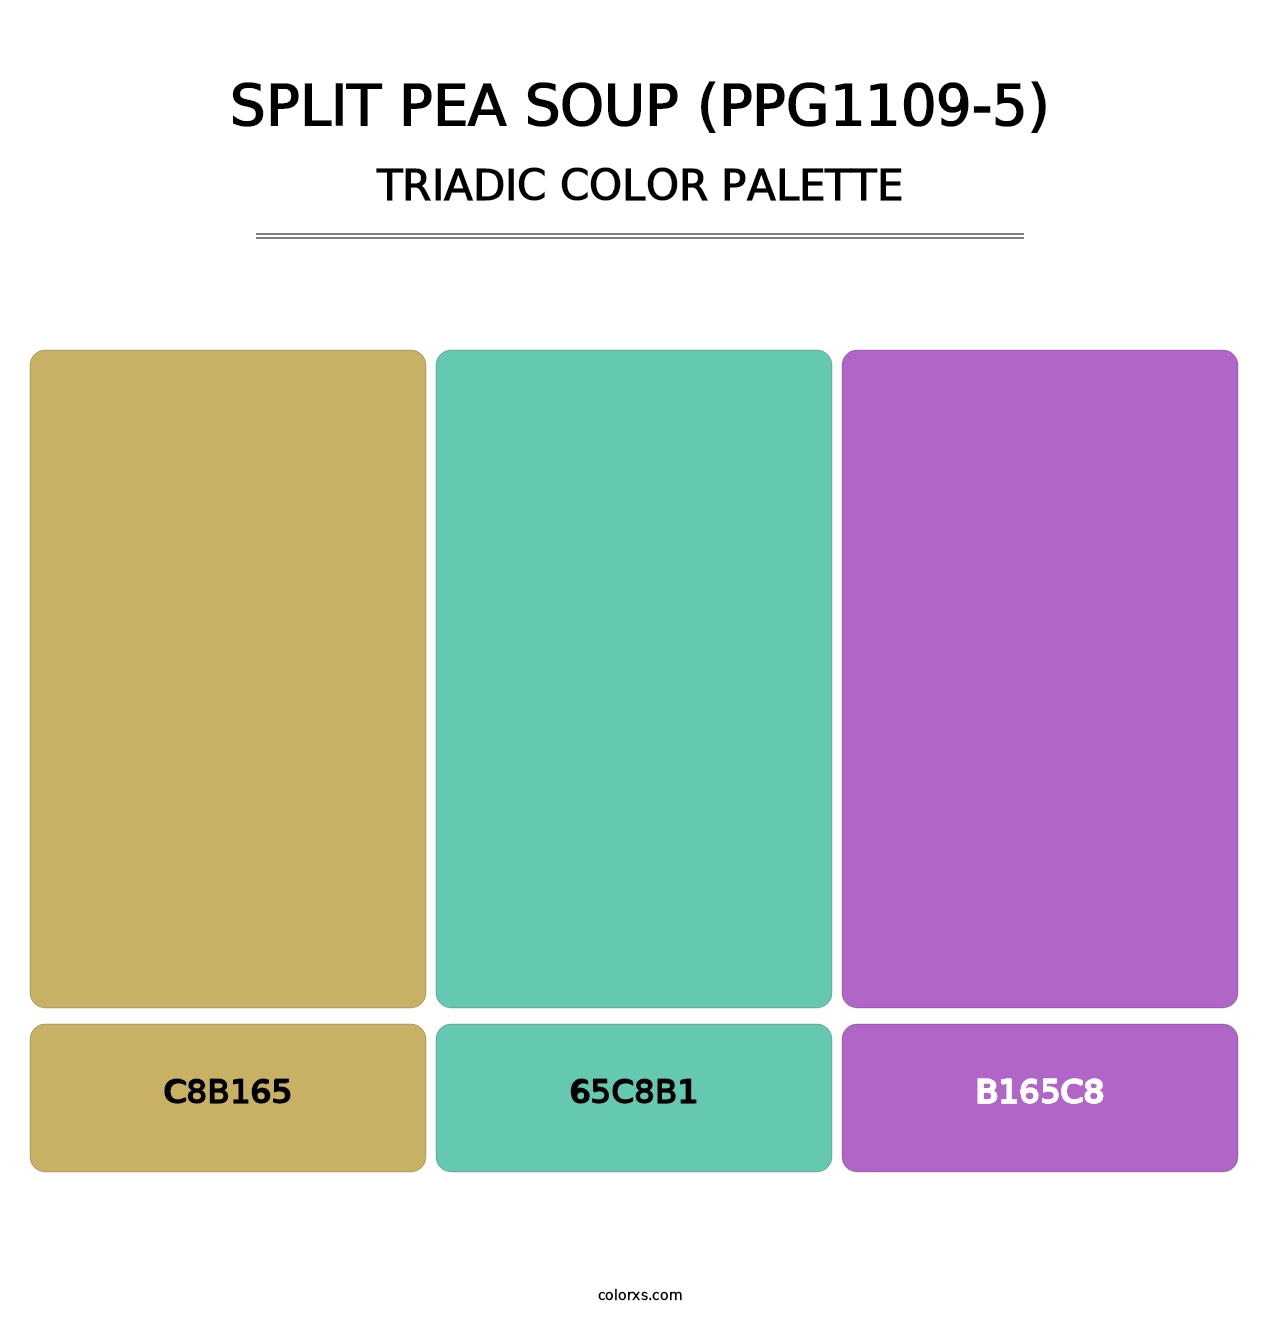 Split Pea Soup (PPG1109-5) - Triadic Color Palette